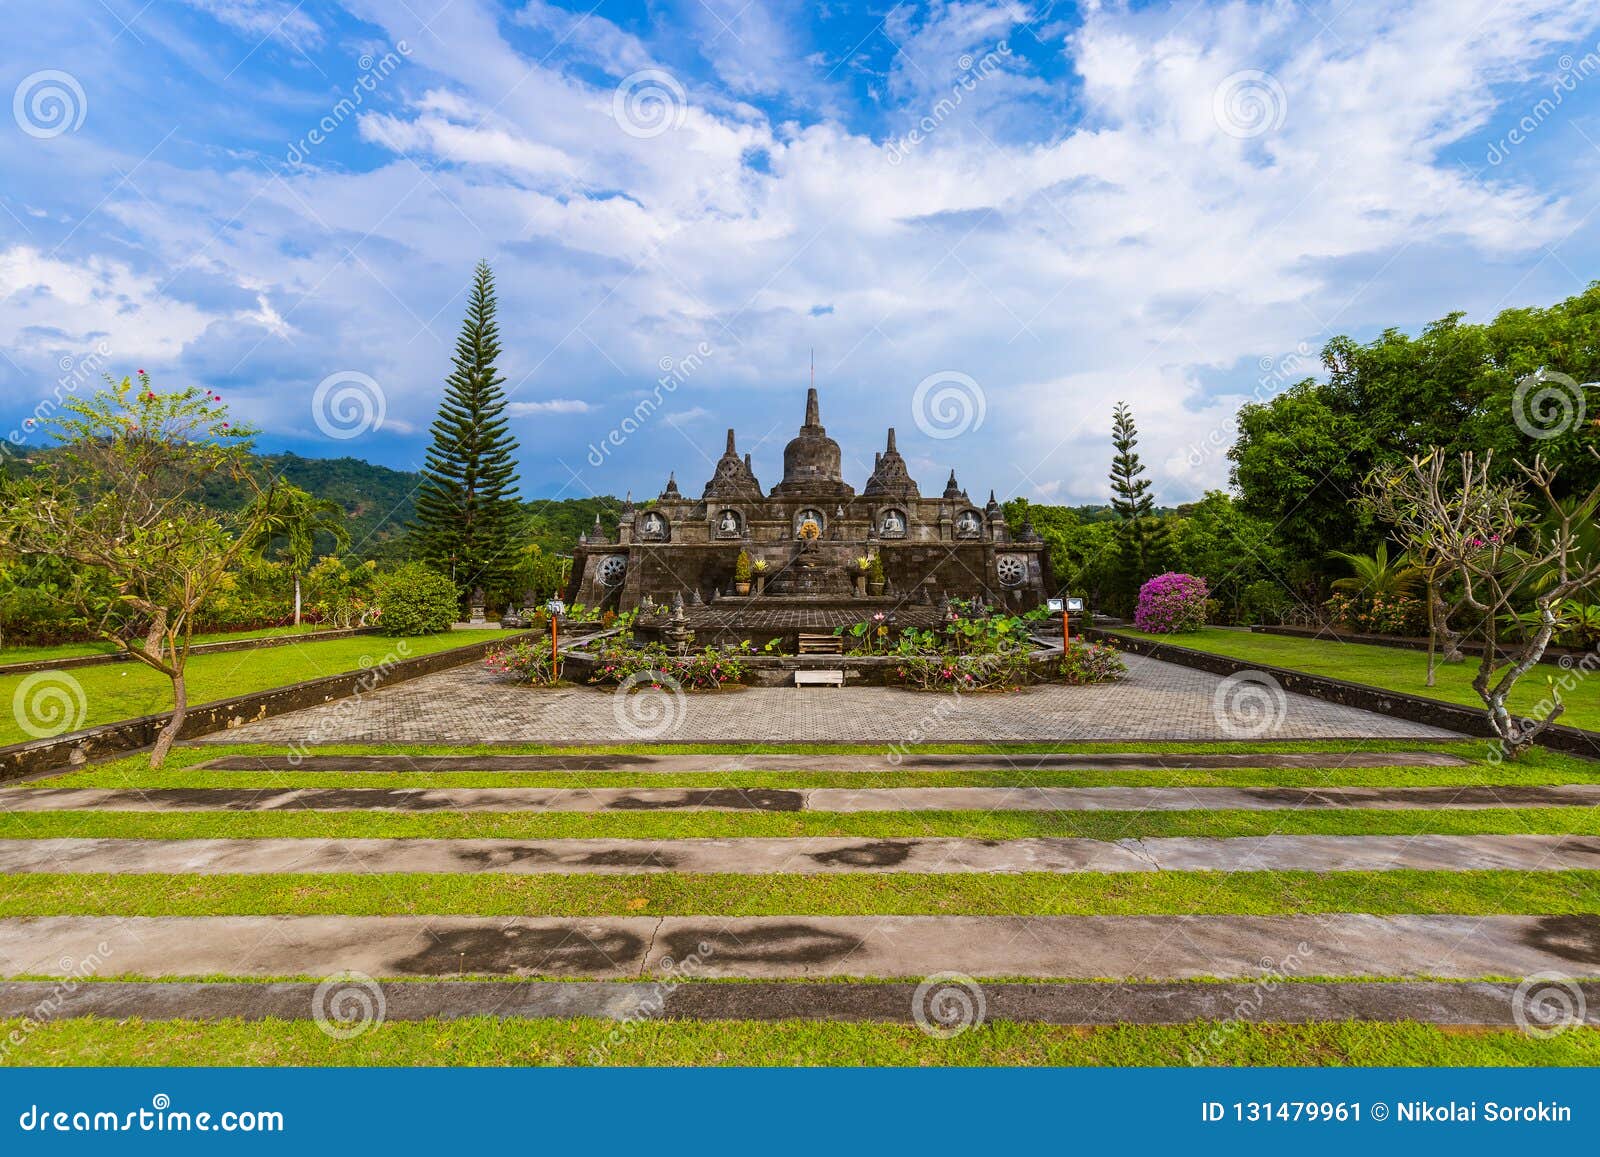 Buddhist Temple  Of Banjar  In Island Bali Indonesia Stock 